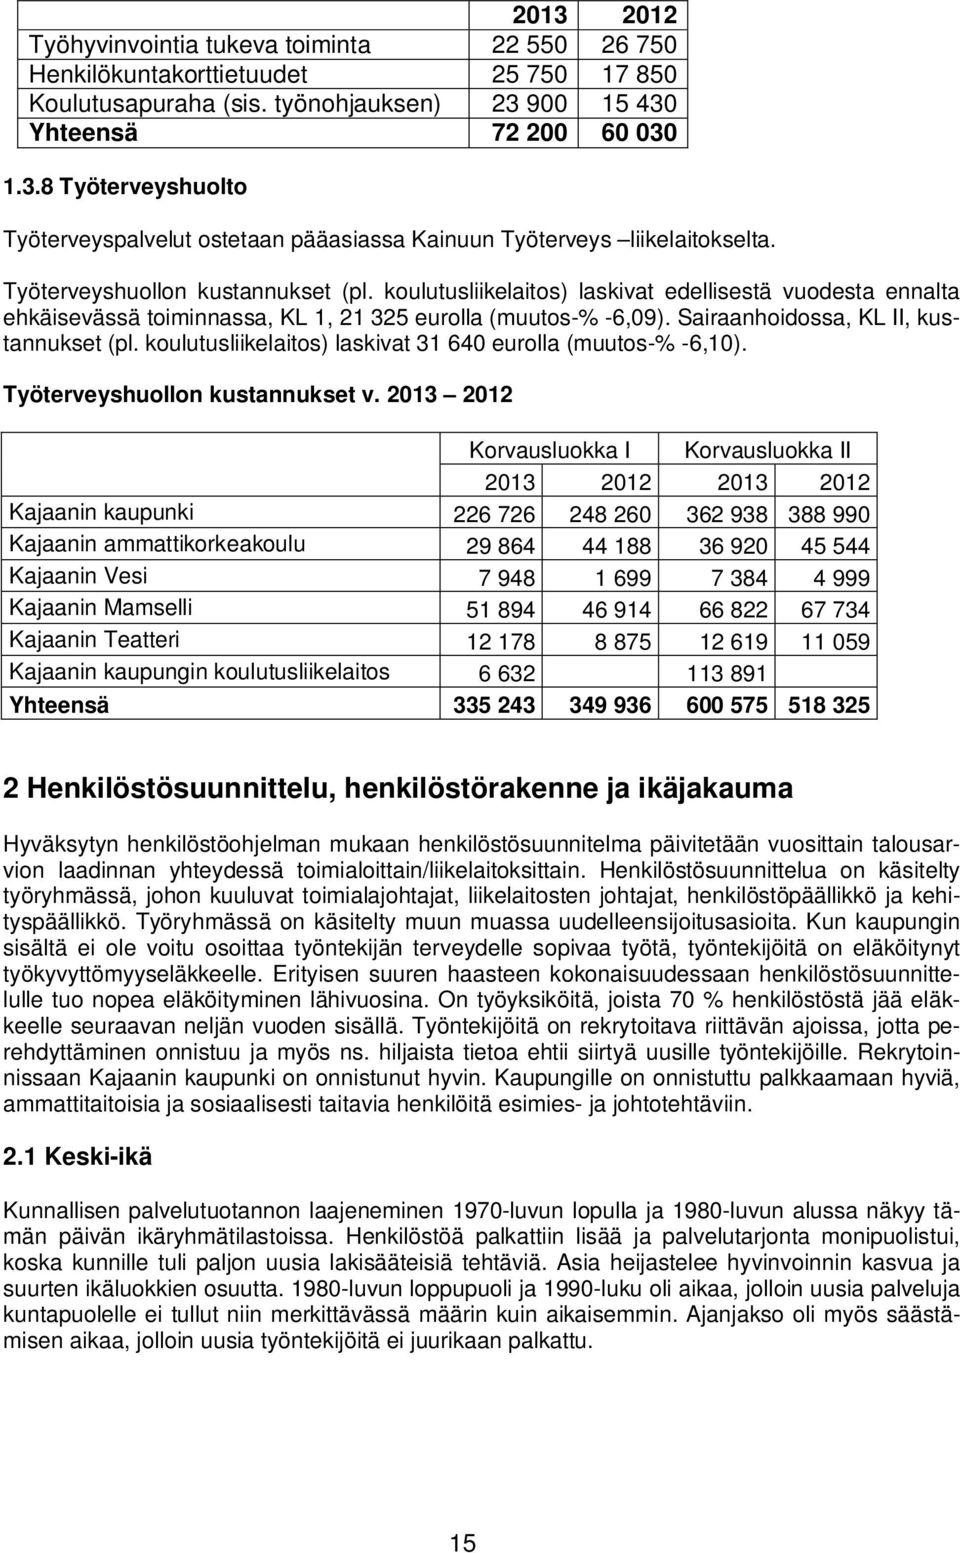 Sairaanhoidossa, KL II, kustannukset (pl. koulutusliikelaitos) laskivat 31 640 eurolla (muutos-% -6,10). Työterveyshuollon kustannukset v.